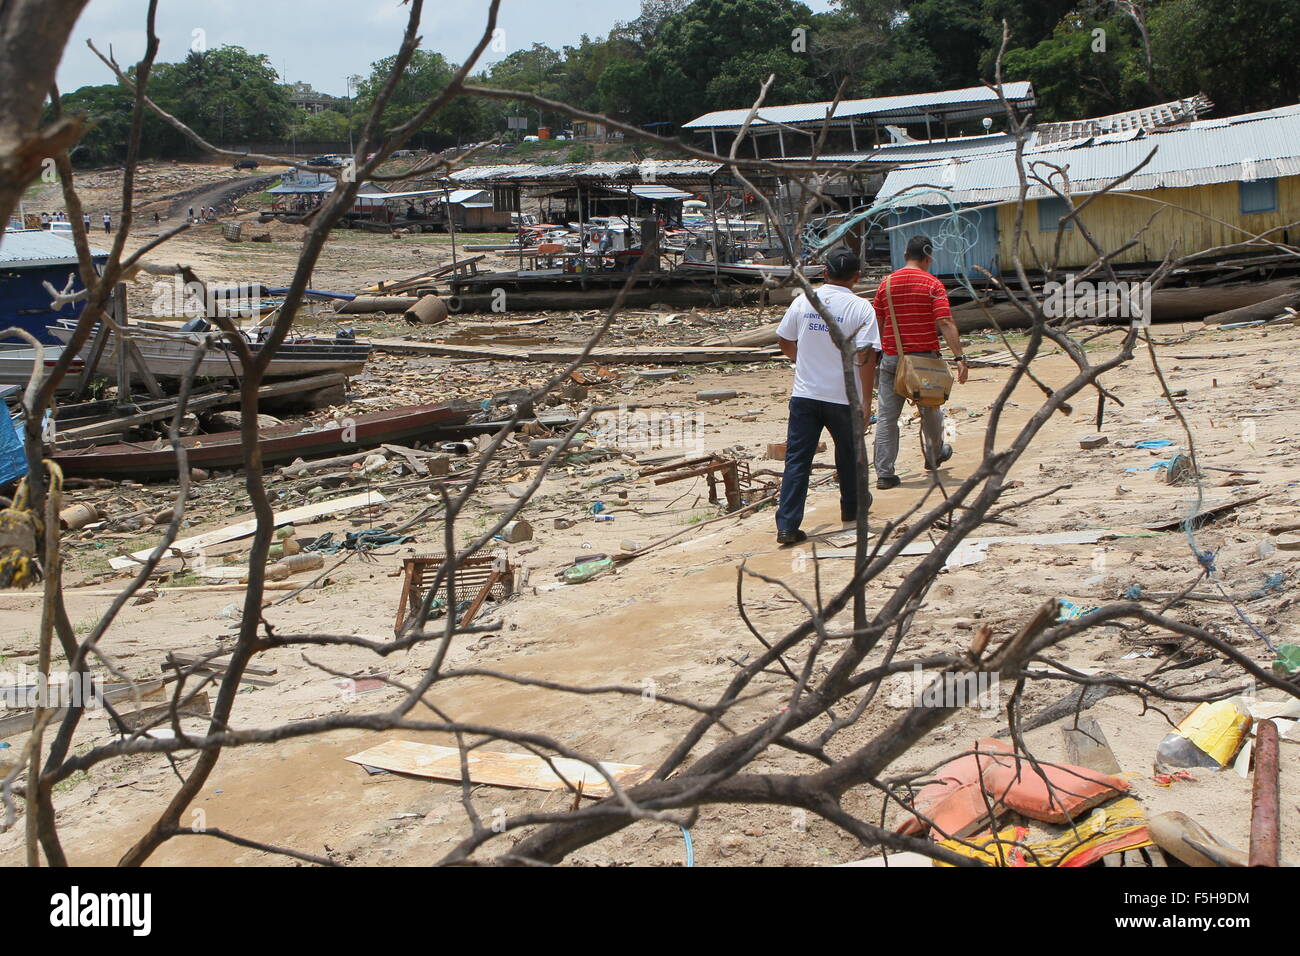 Avec les eaux basses du Rio Negro, les ordures s'accumulent dans le waterfront marina David, zone ouest de Manaus Banque D'Images